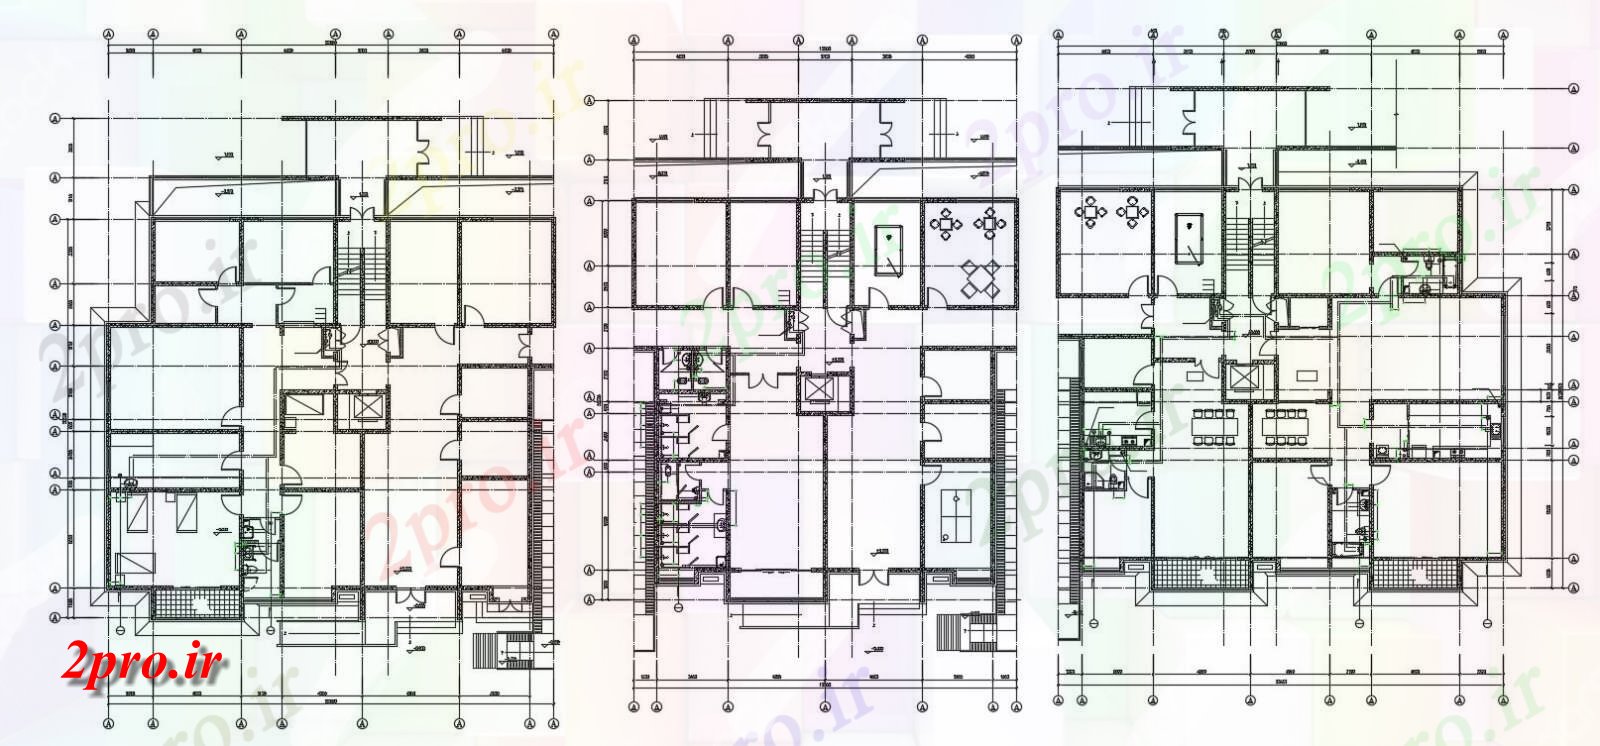 دانلود نقشه ساختمان اداری - تجاری - صنعتی ساختمان بازرگانی و آپارتمان طرحی چیدمان 19 در 25 متر (کد154922)